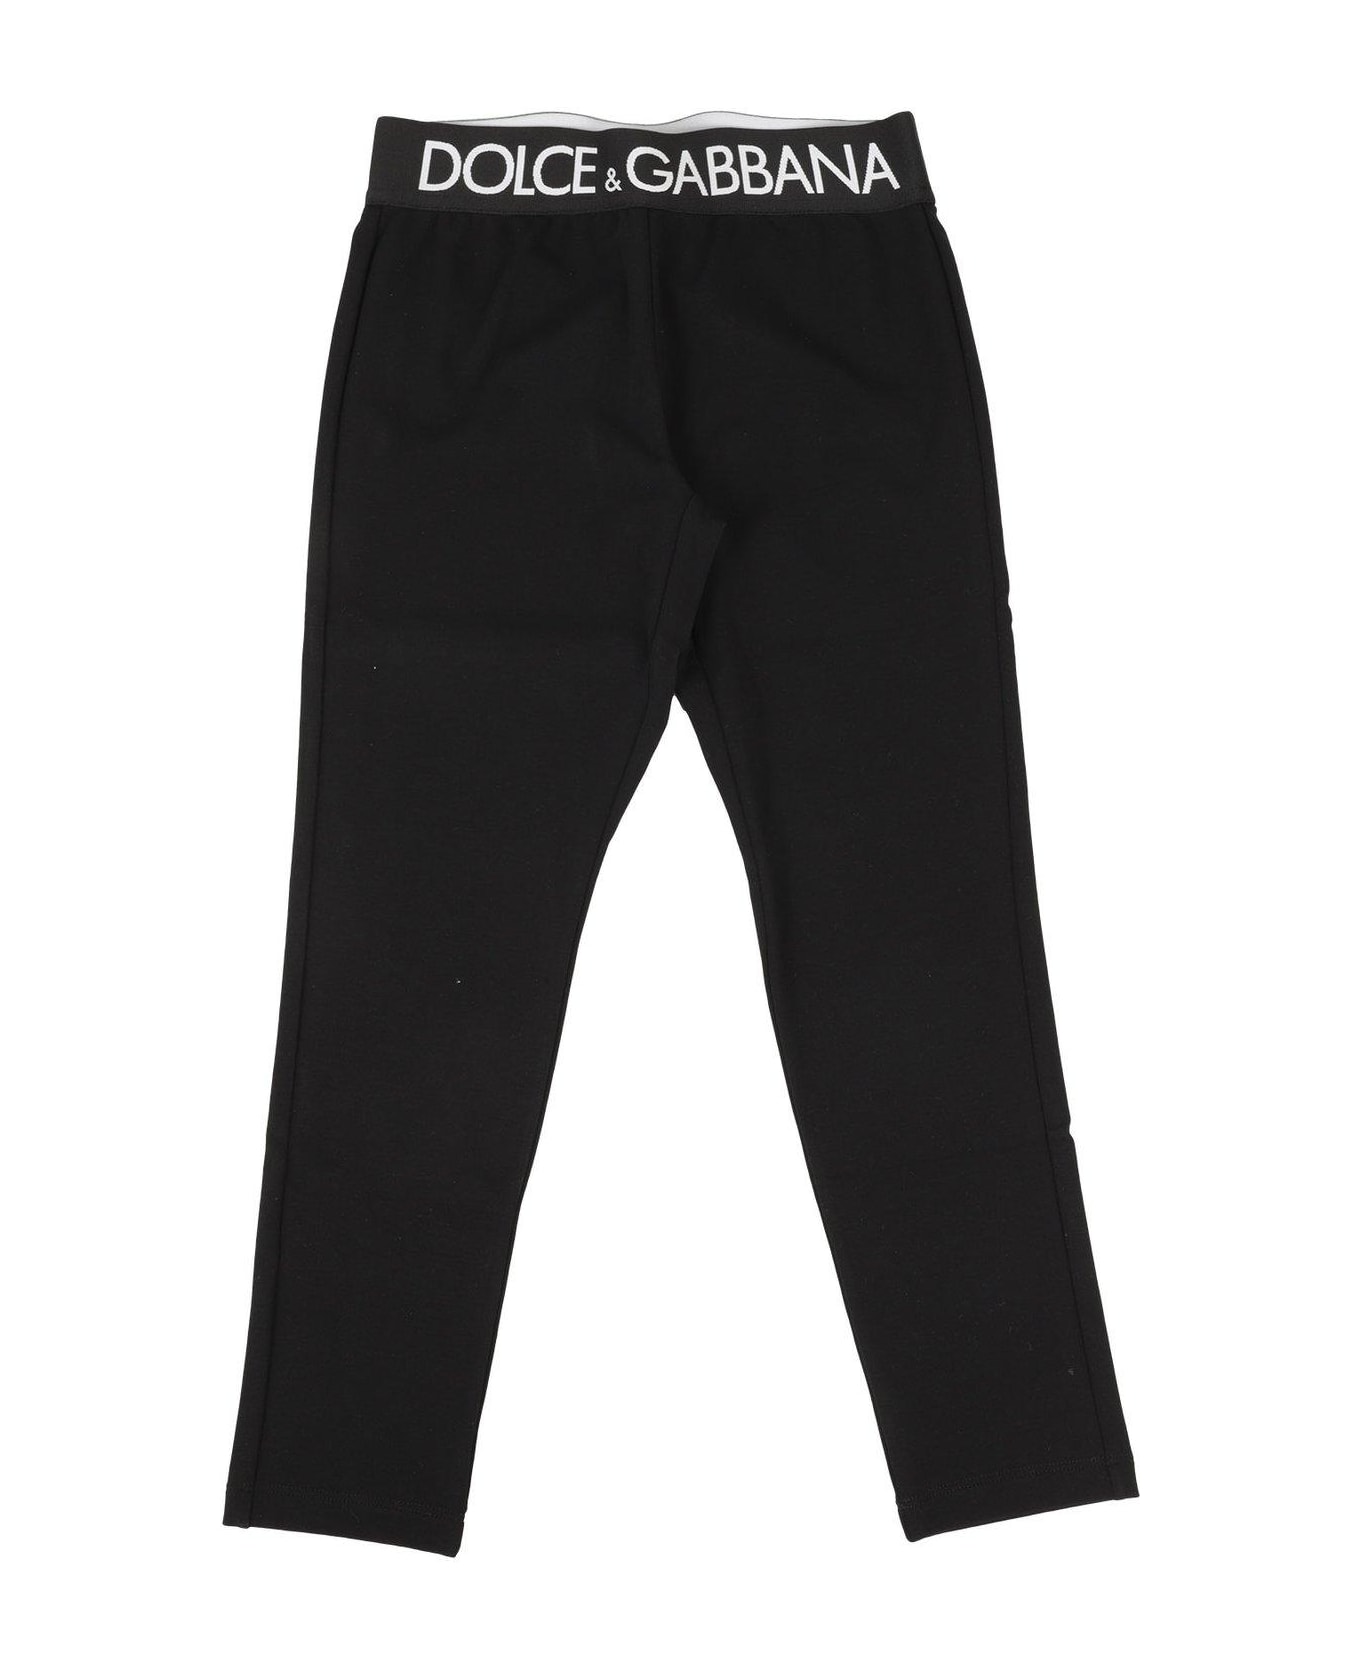 Dolce & Gabbana Logo Waistband Leggings